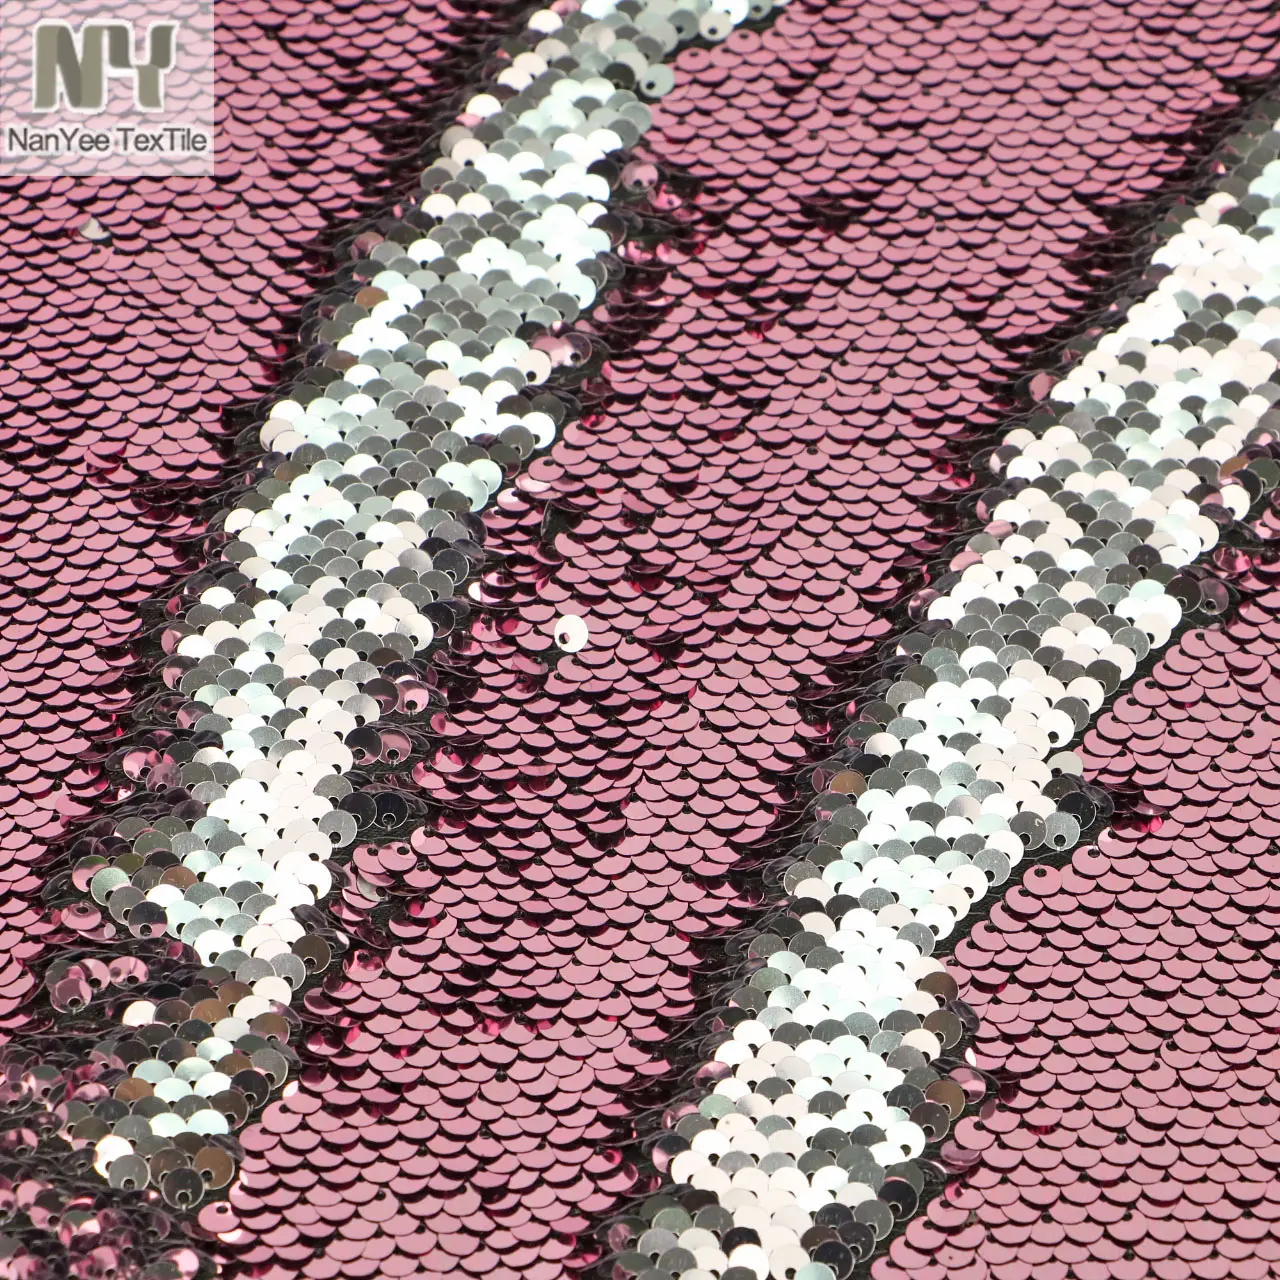 Nanyee textiles en Stock de plata Rosa tela de lentejuelas para pared dibujo Decoración